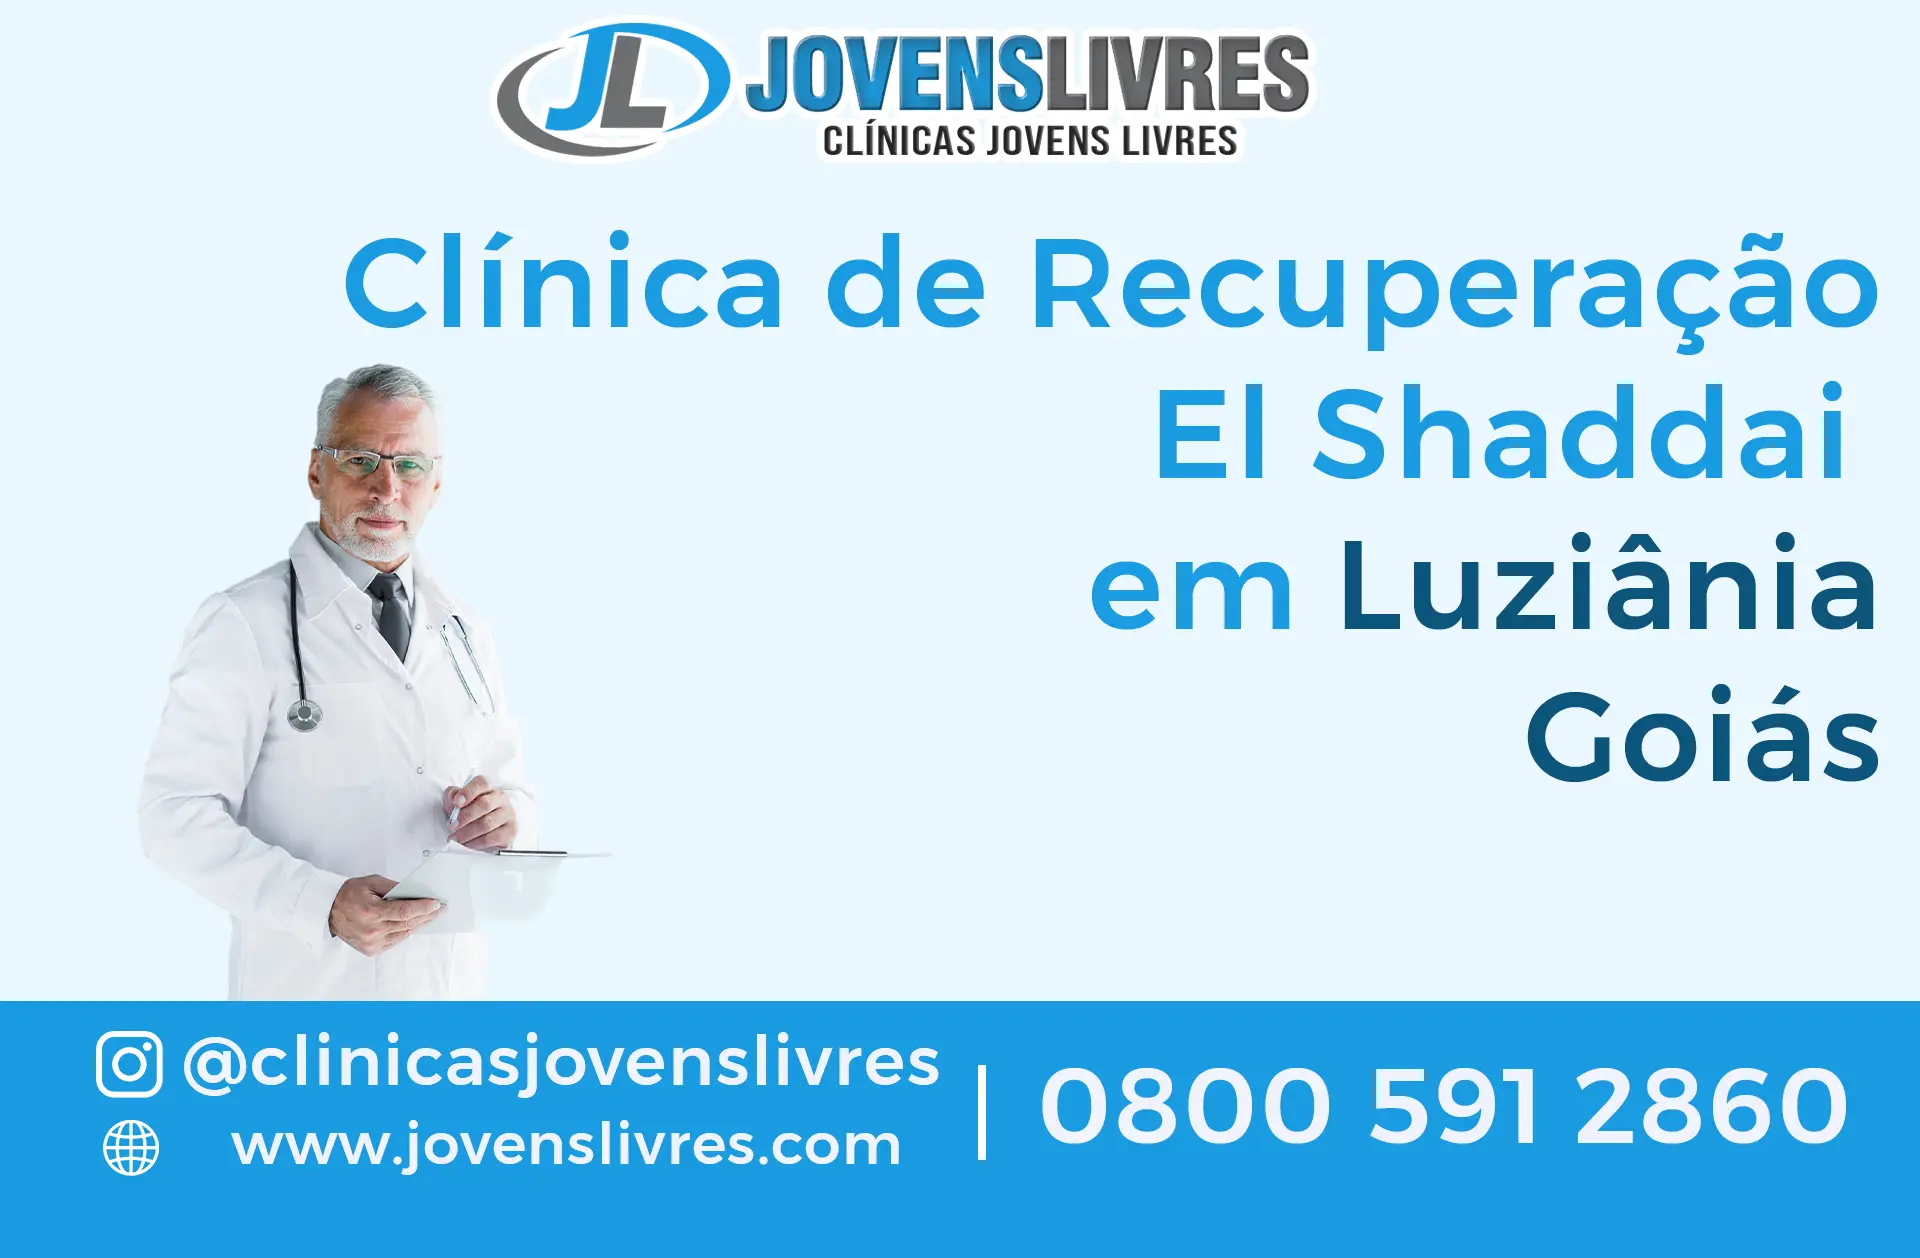 Clínica de Recuperação El Shaddai em Luziânia - Goiás